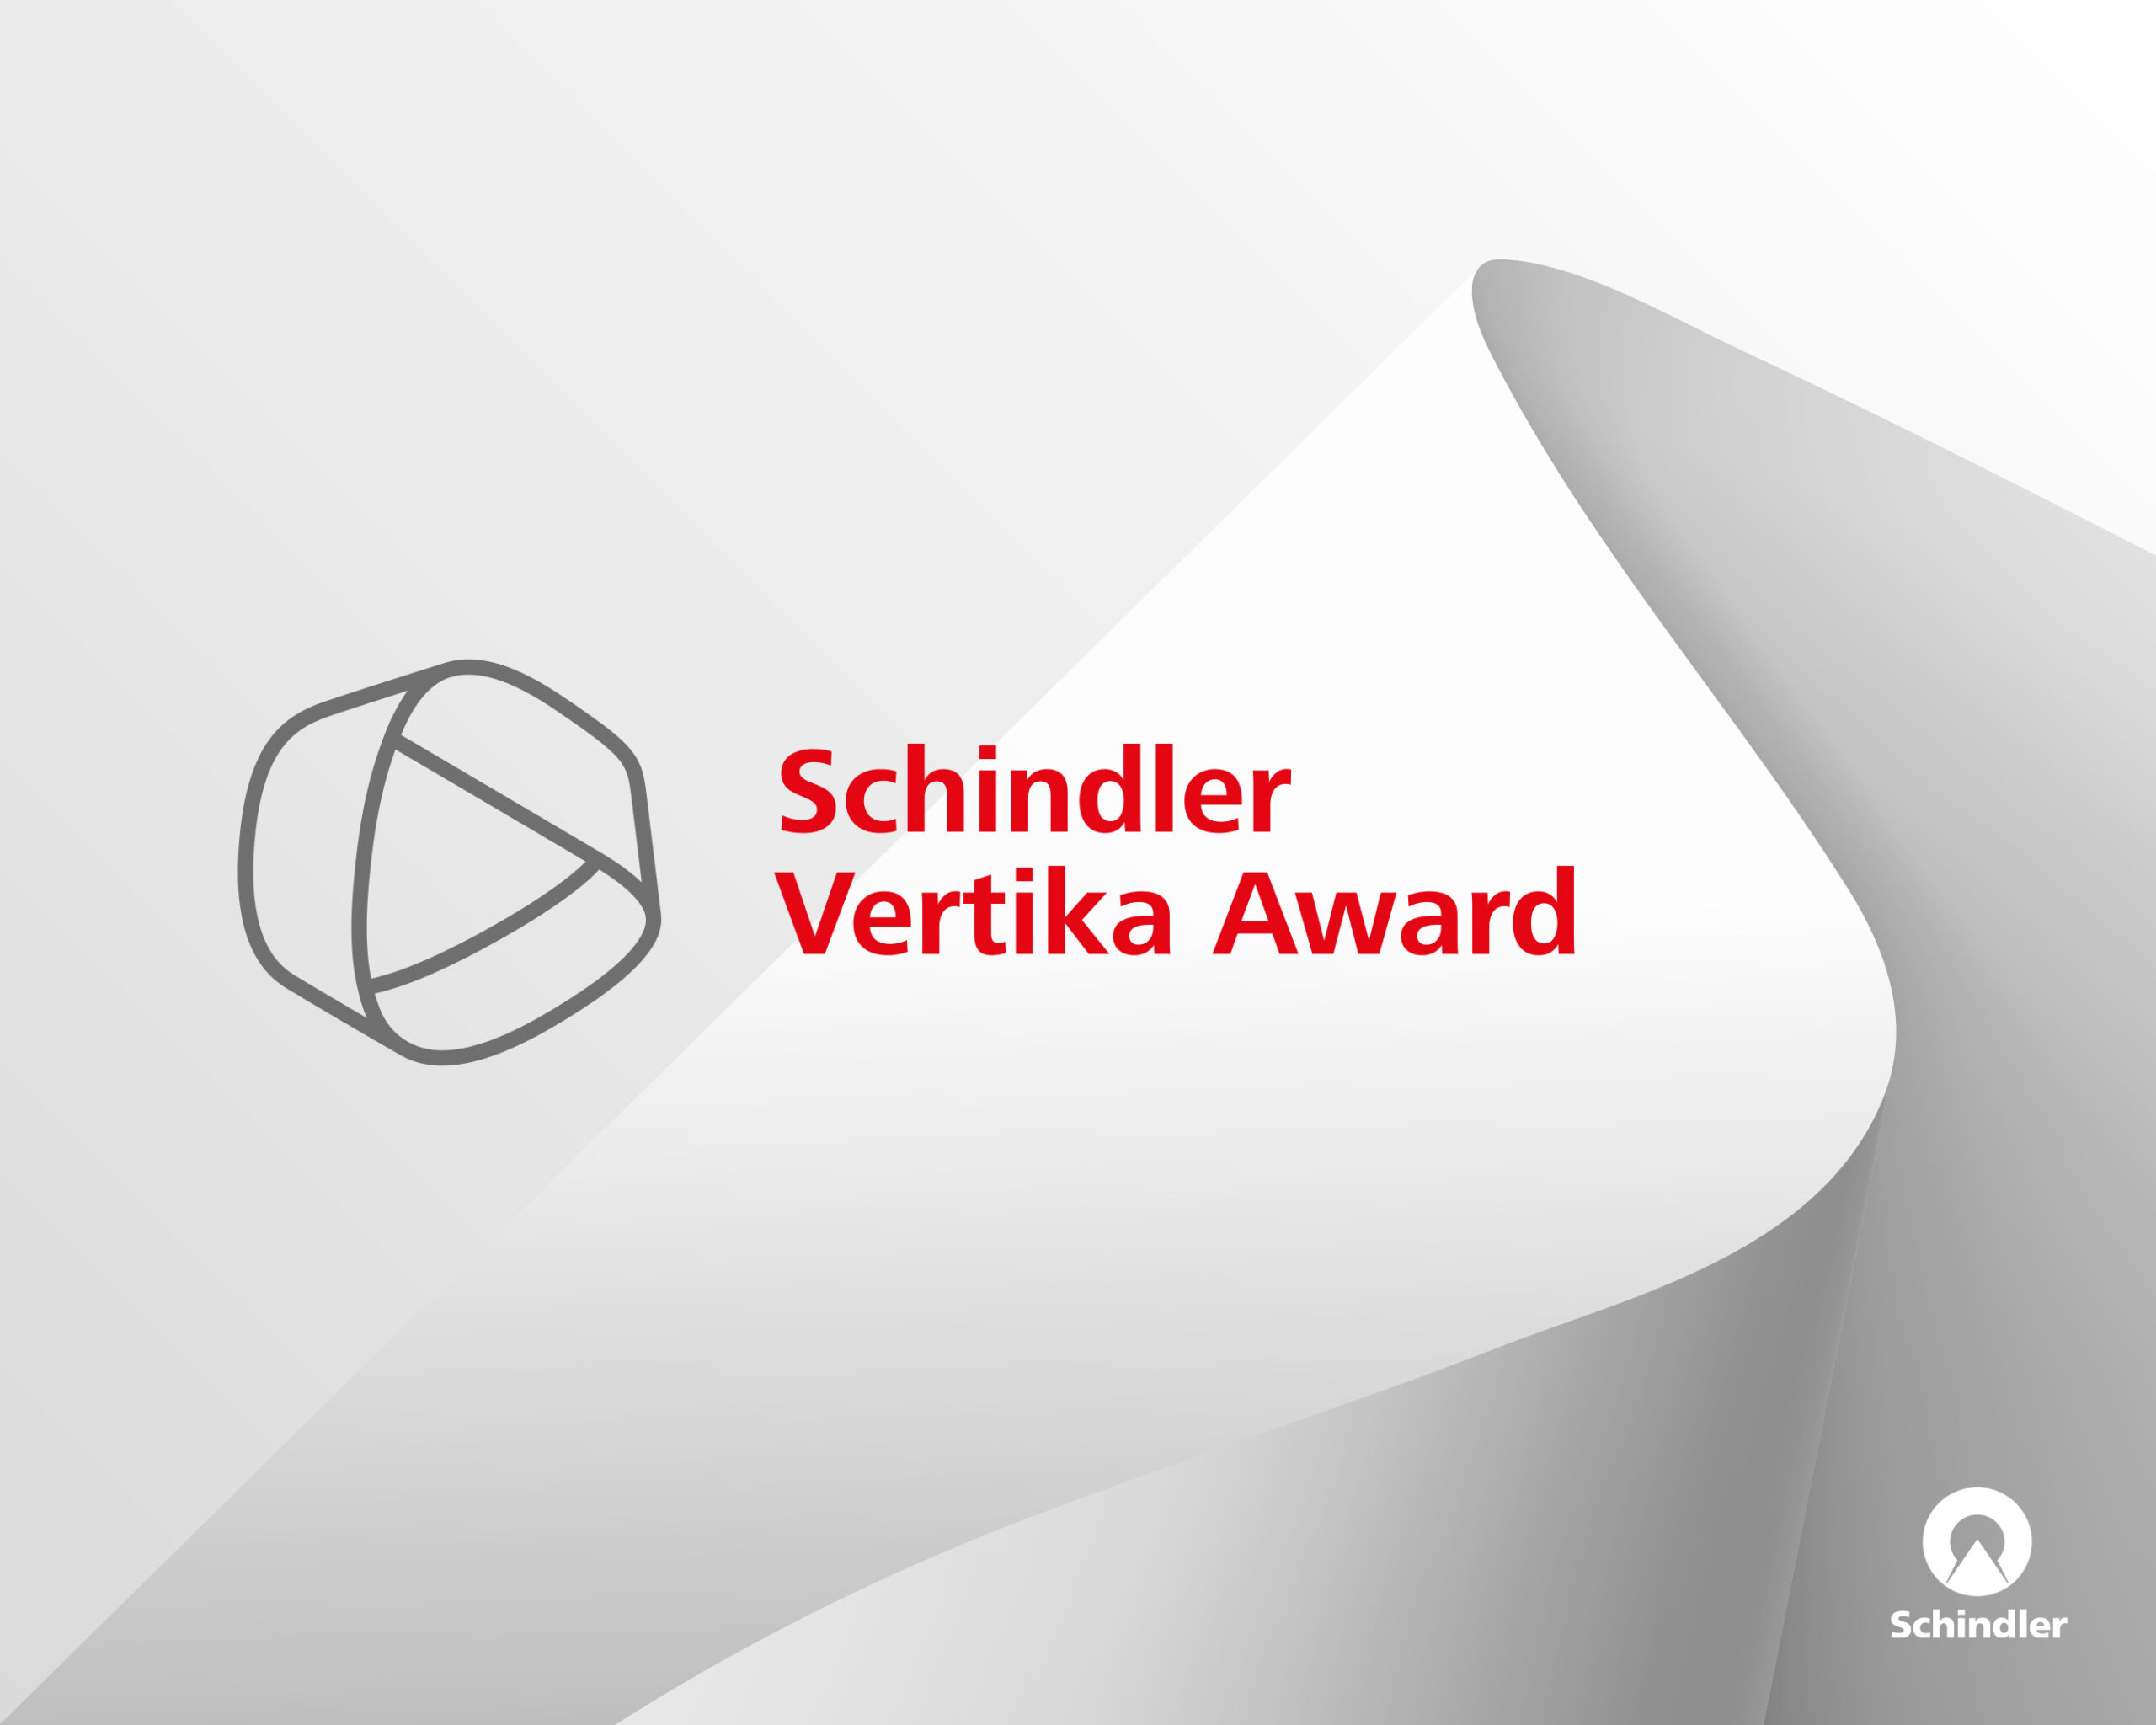 Schindler_Vertika_Award_Background_1